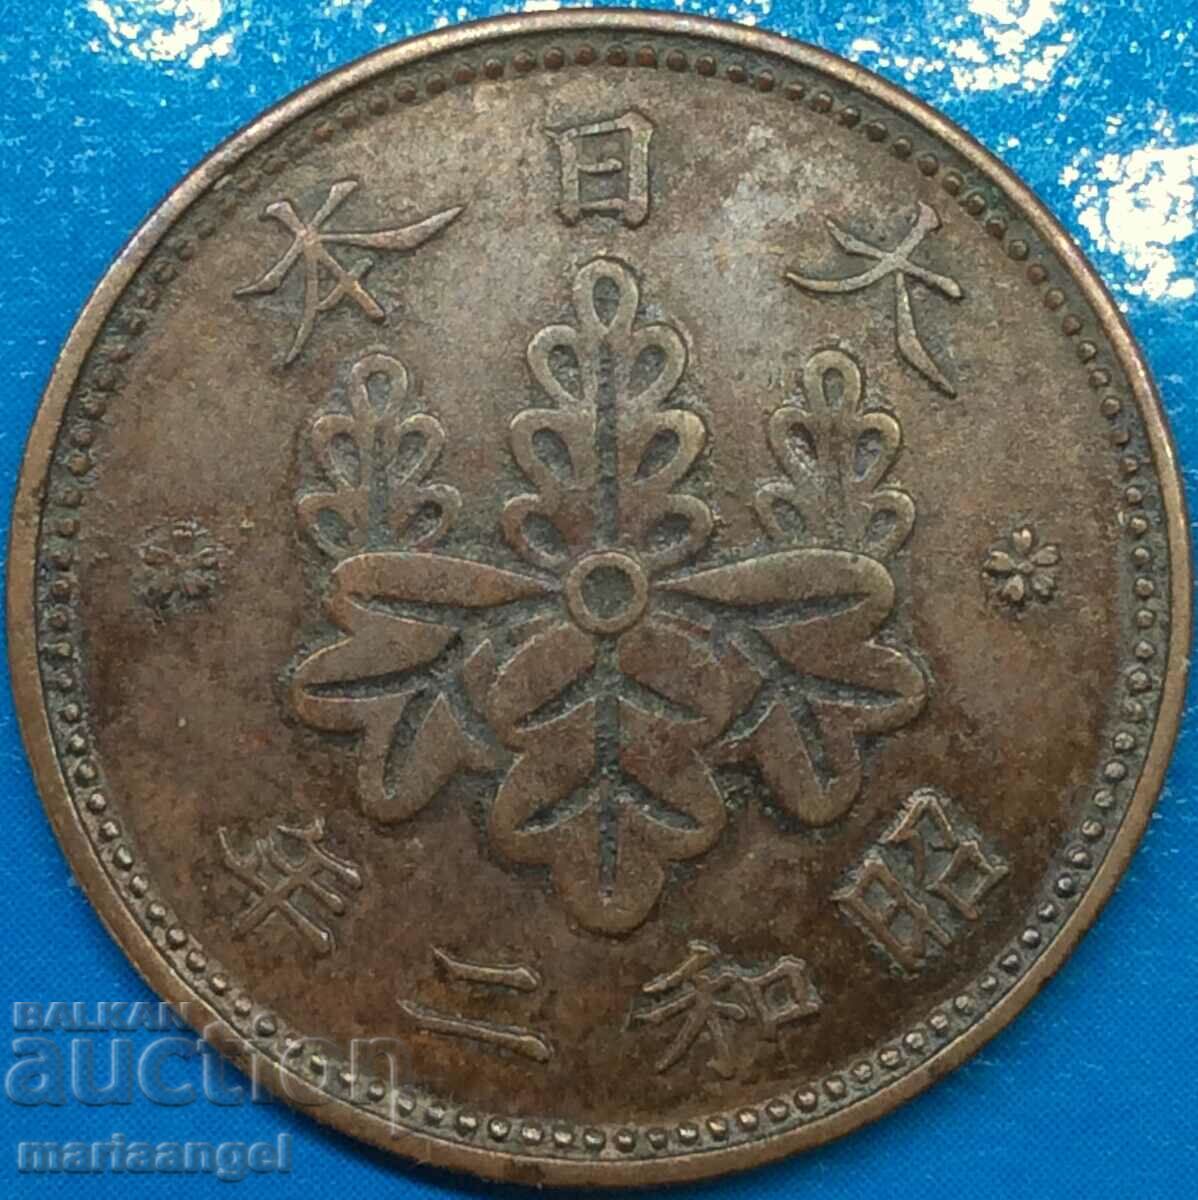 Japan 1 Sen Emperor Hirohito 1926-1988 23mm copper coin